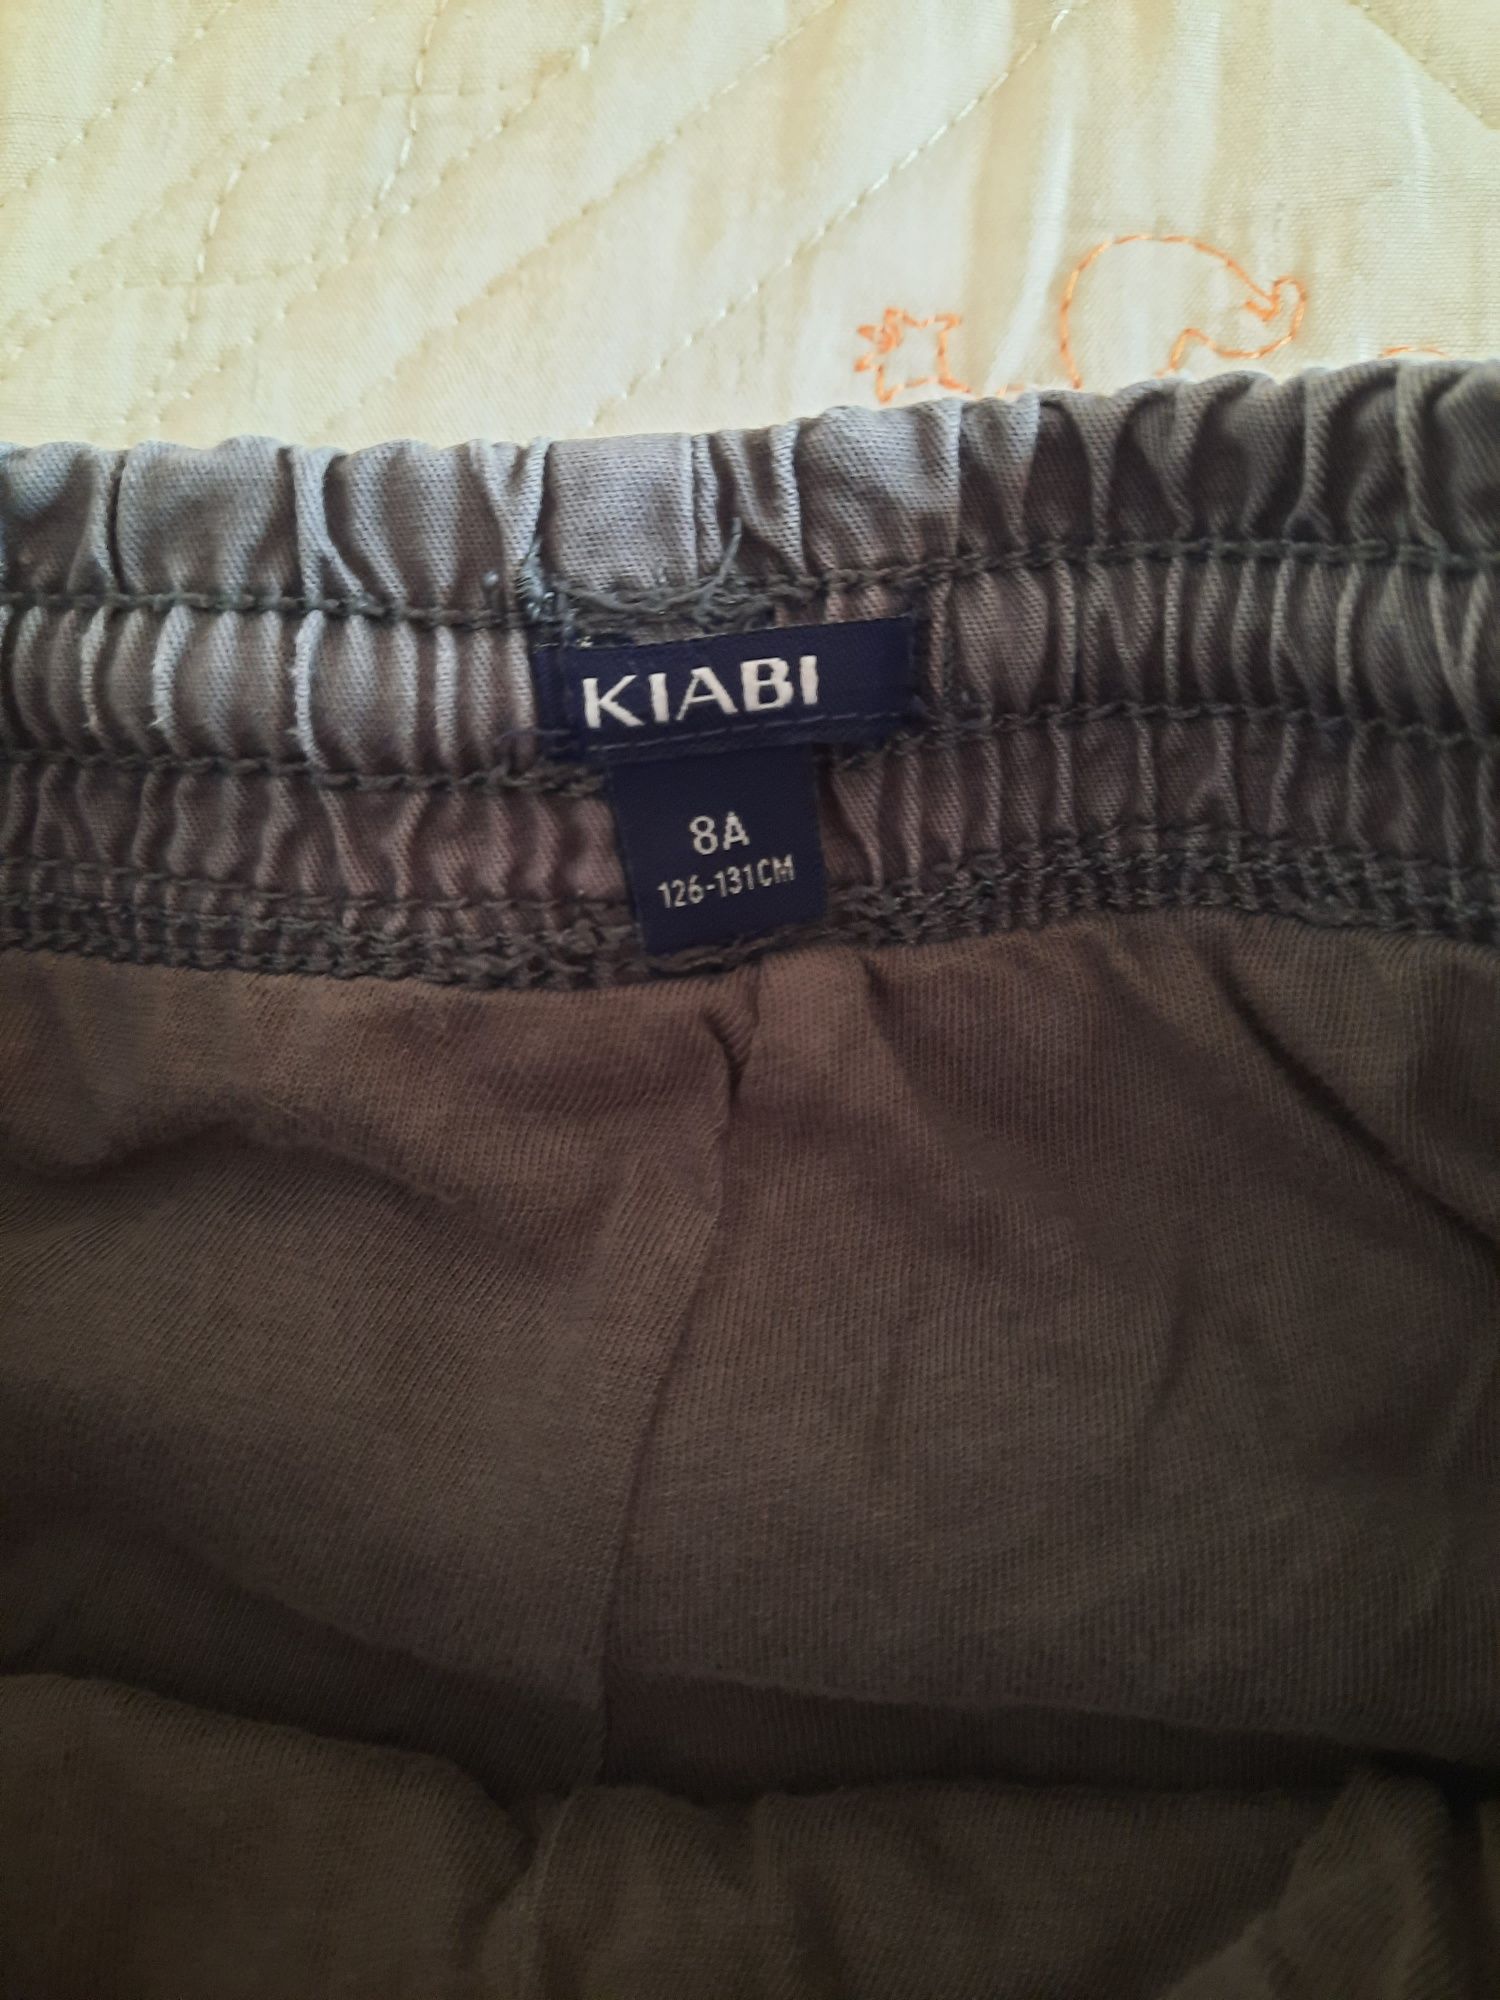 Calças forradas Kiabi